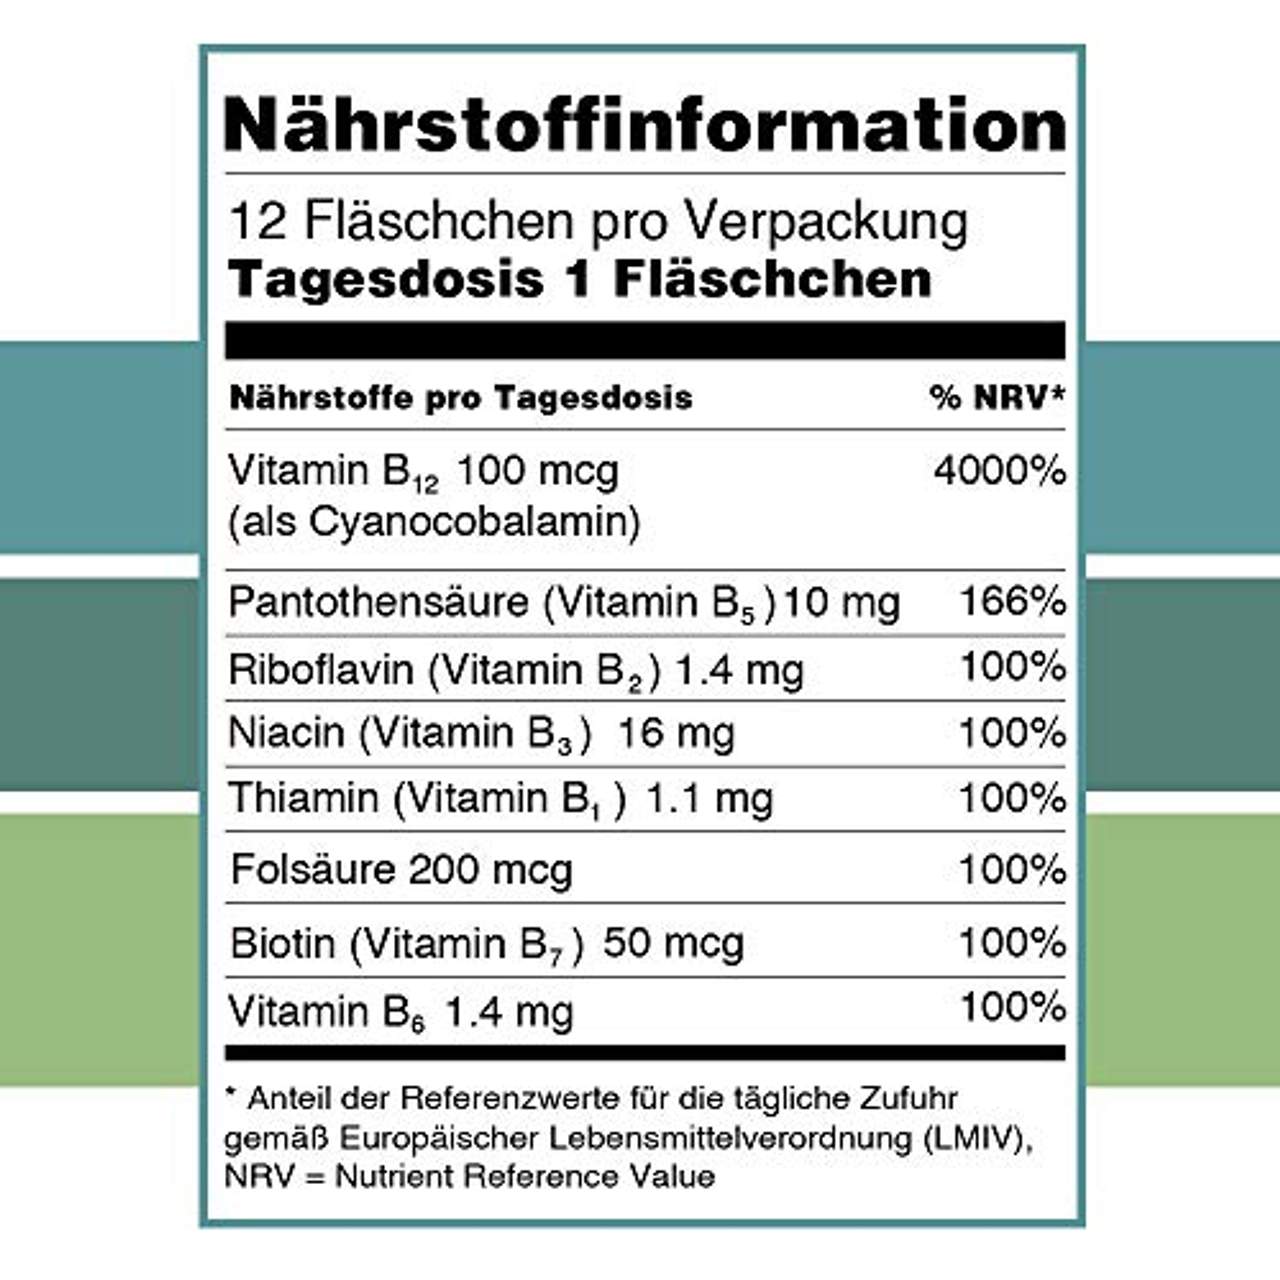 Vitabaum Vitamin B12 B Komplex